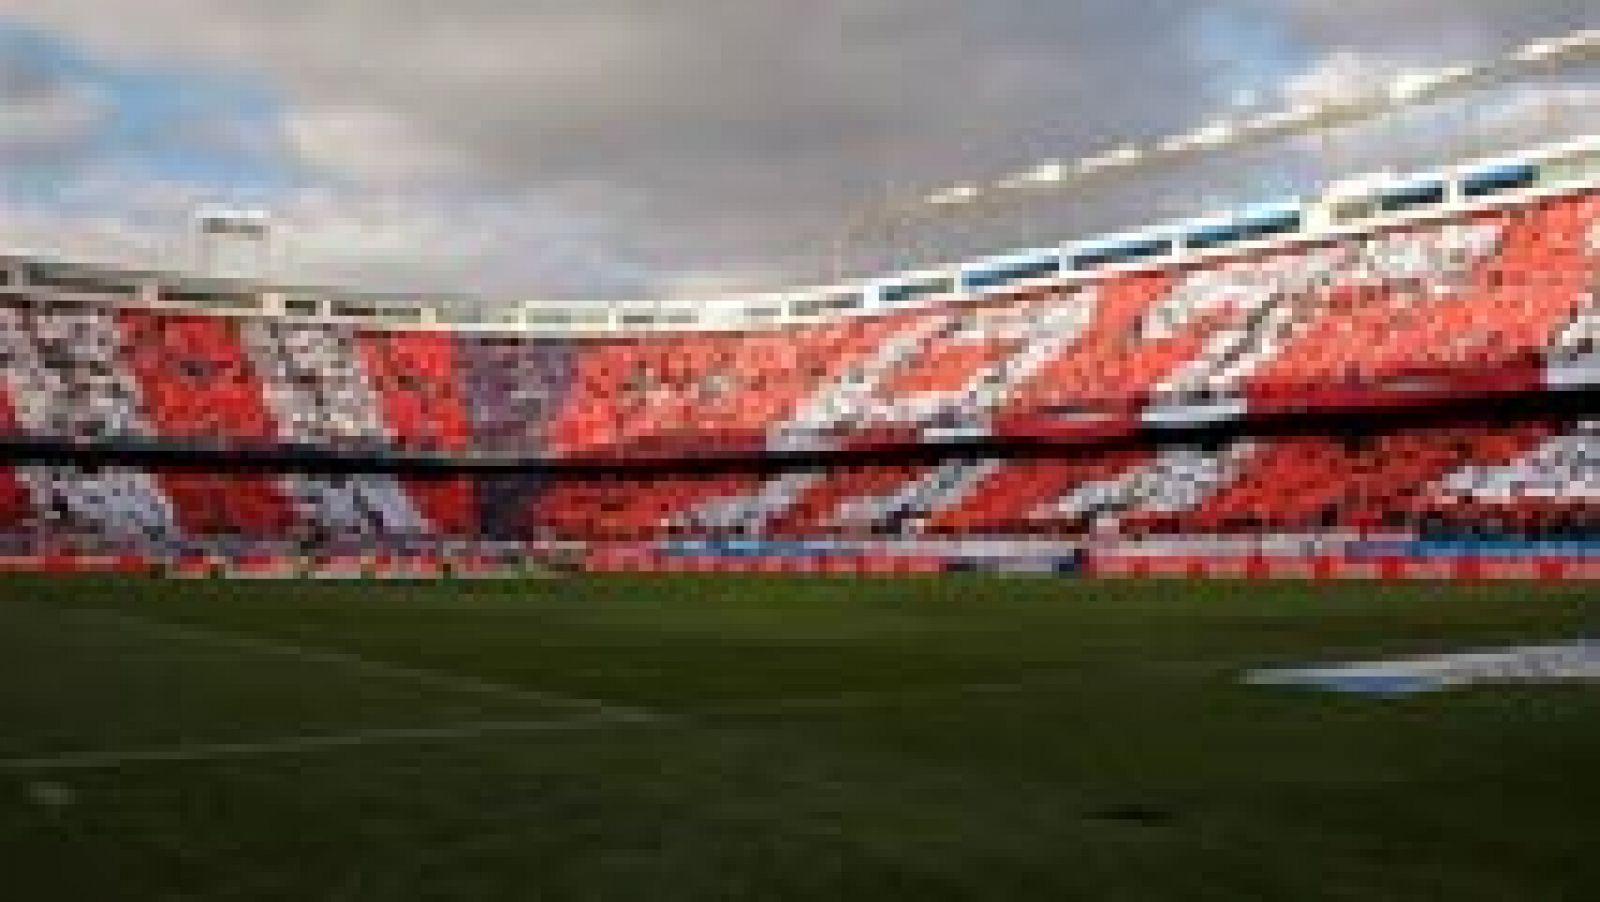 La final de la Copa del Rey 2016, que disputarán el FC Barcelona y el Sevilla, se celebrará el próximo domingo 22 de mayo en el estadio Vicente Calderón, según ha anunciado el club andaluz.